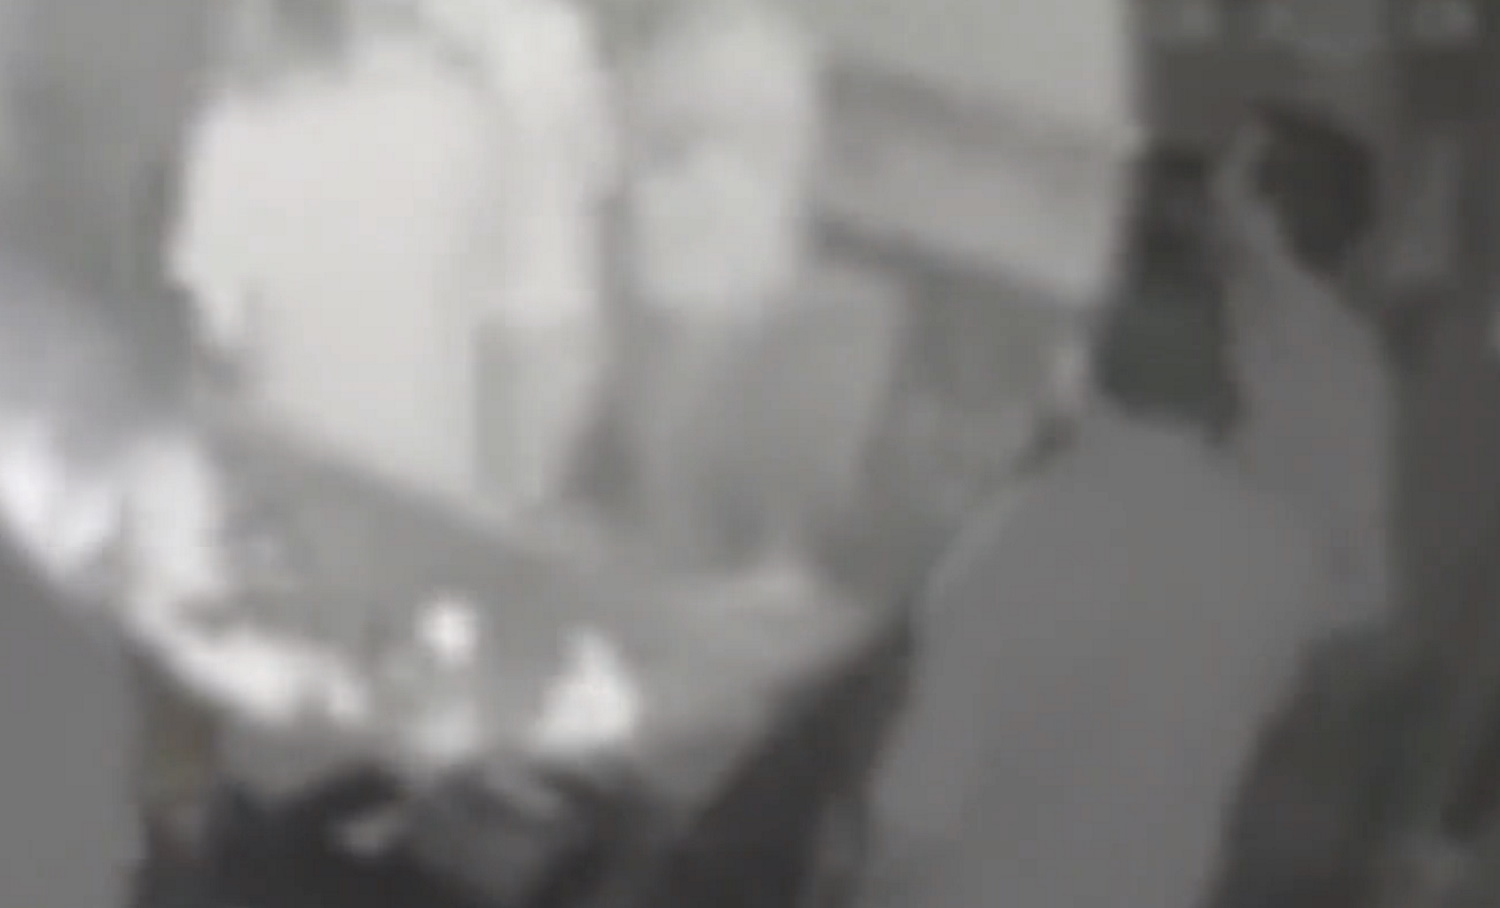 Ραφήνα: Νέο βίντεο ντοκουμέντο από τη συμπλοκή στο μπαρ μεταξύ του 42χρονου και των κατηγορουμένων